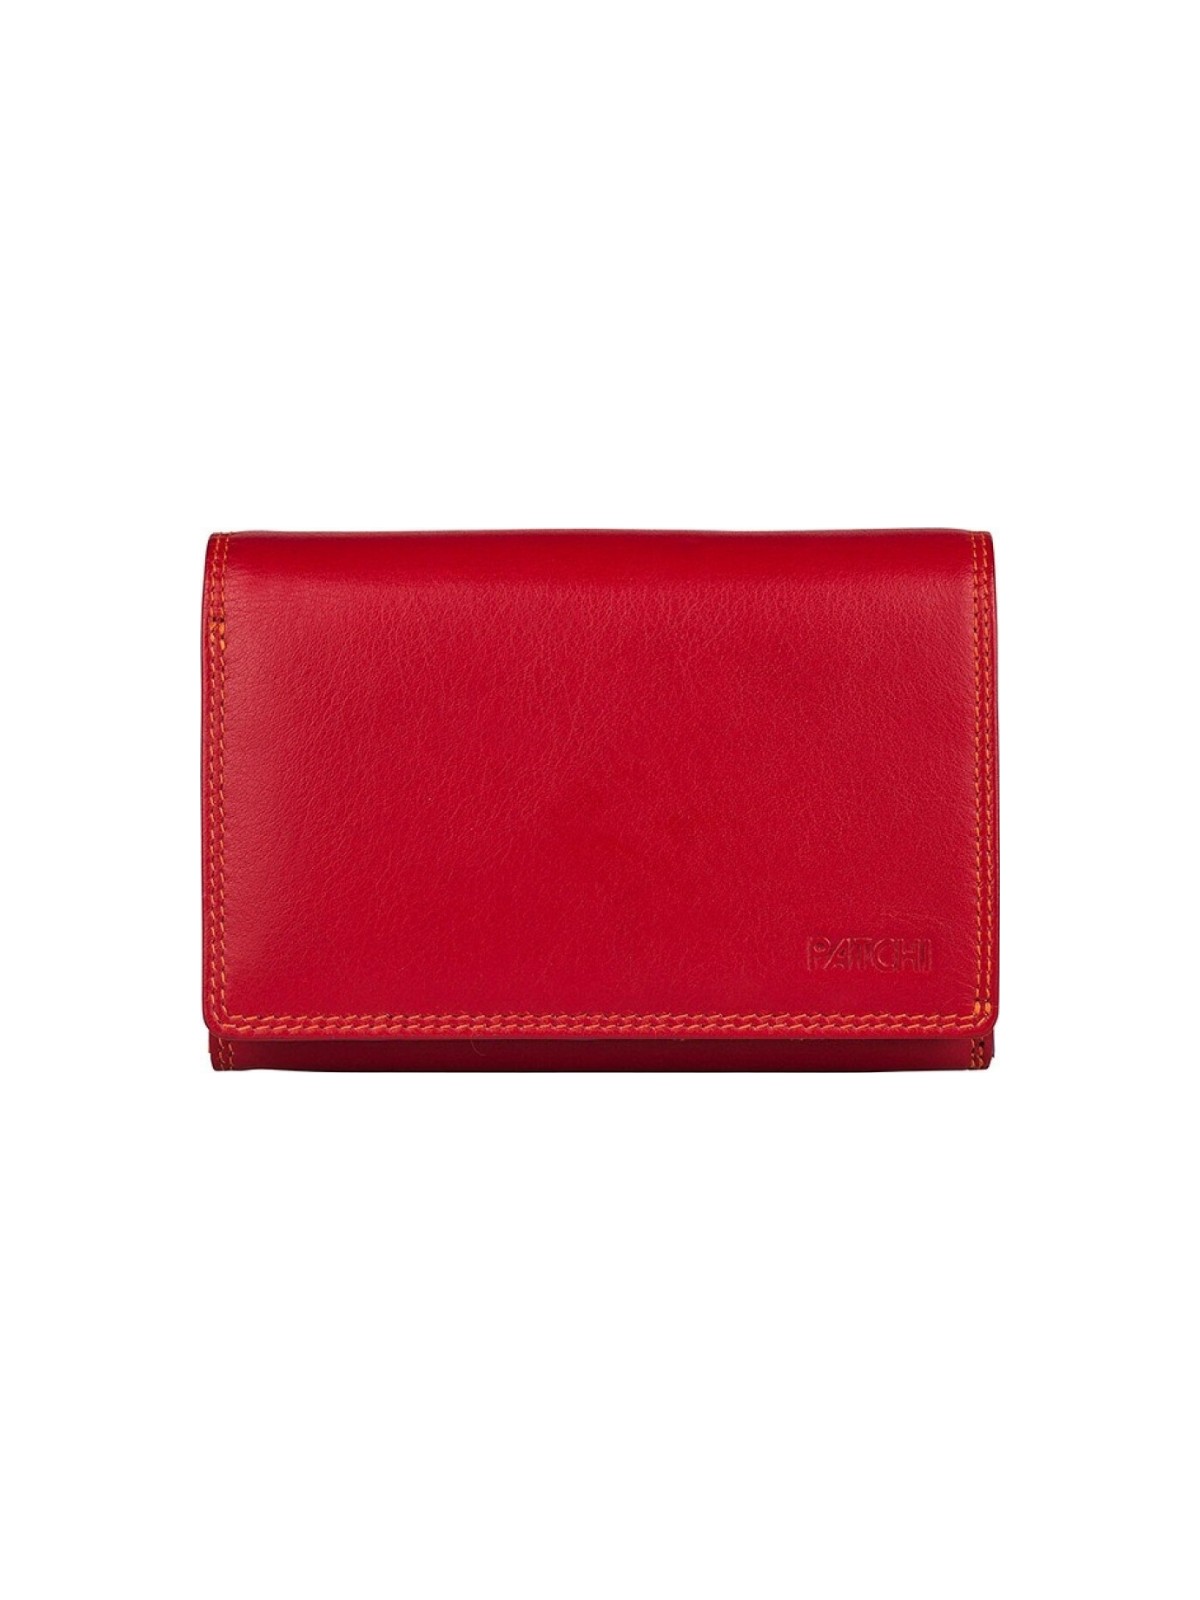 Ledergeldbörse Wallet L multicolor rot